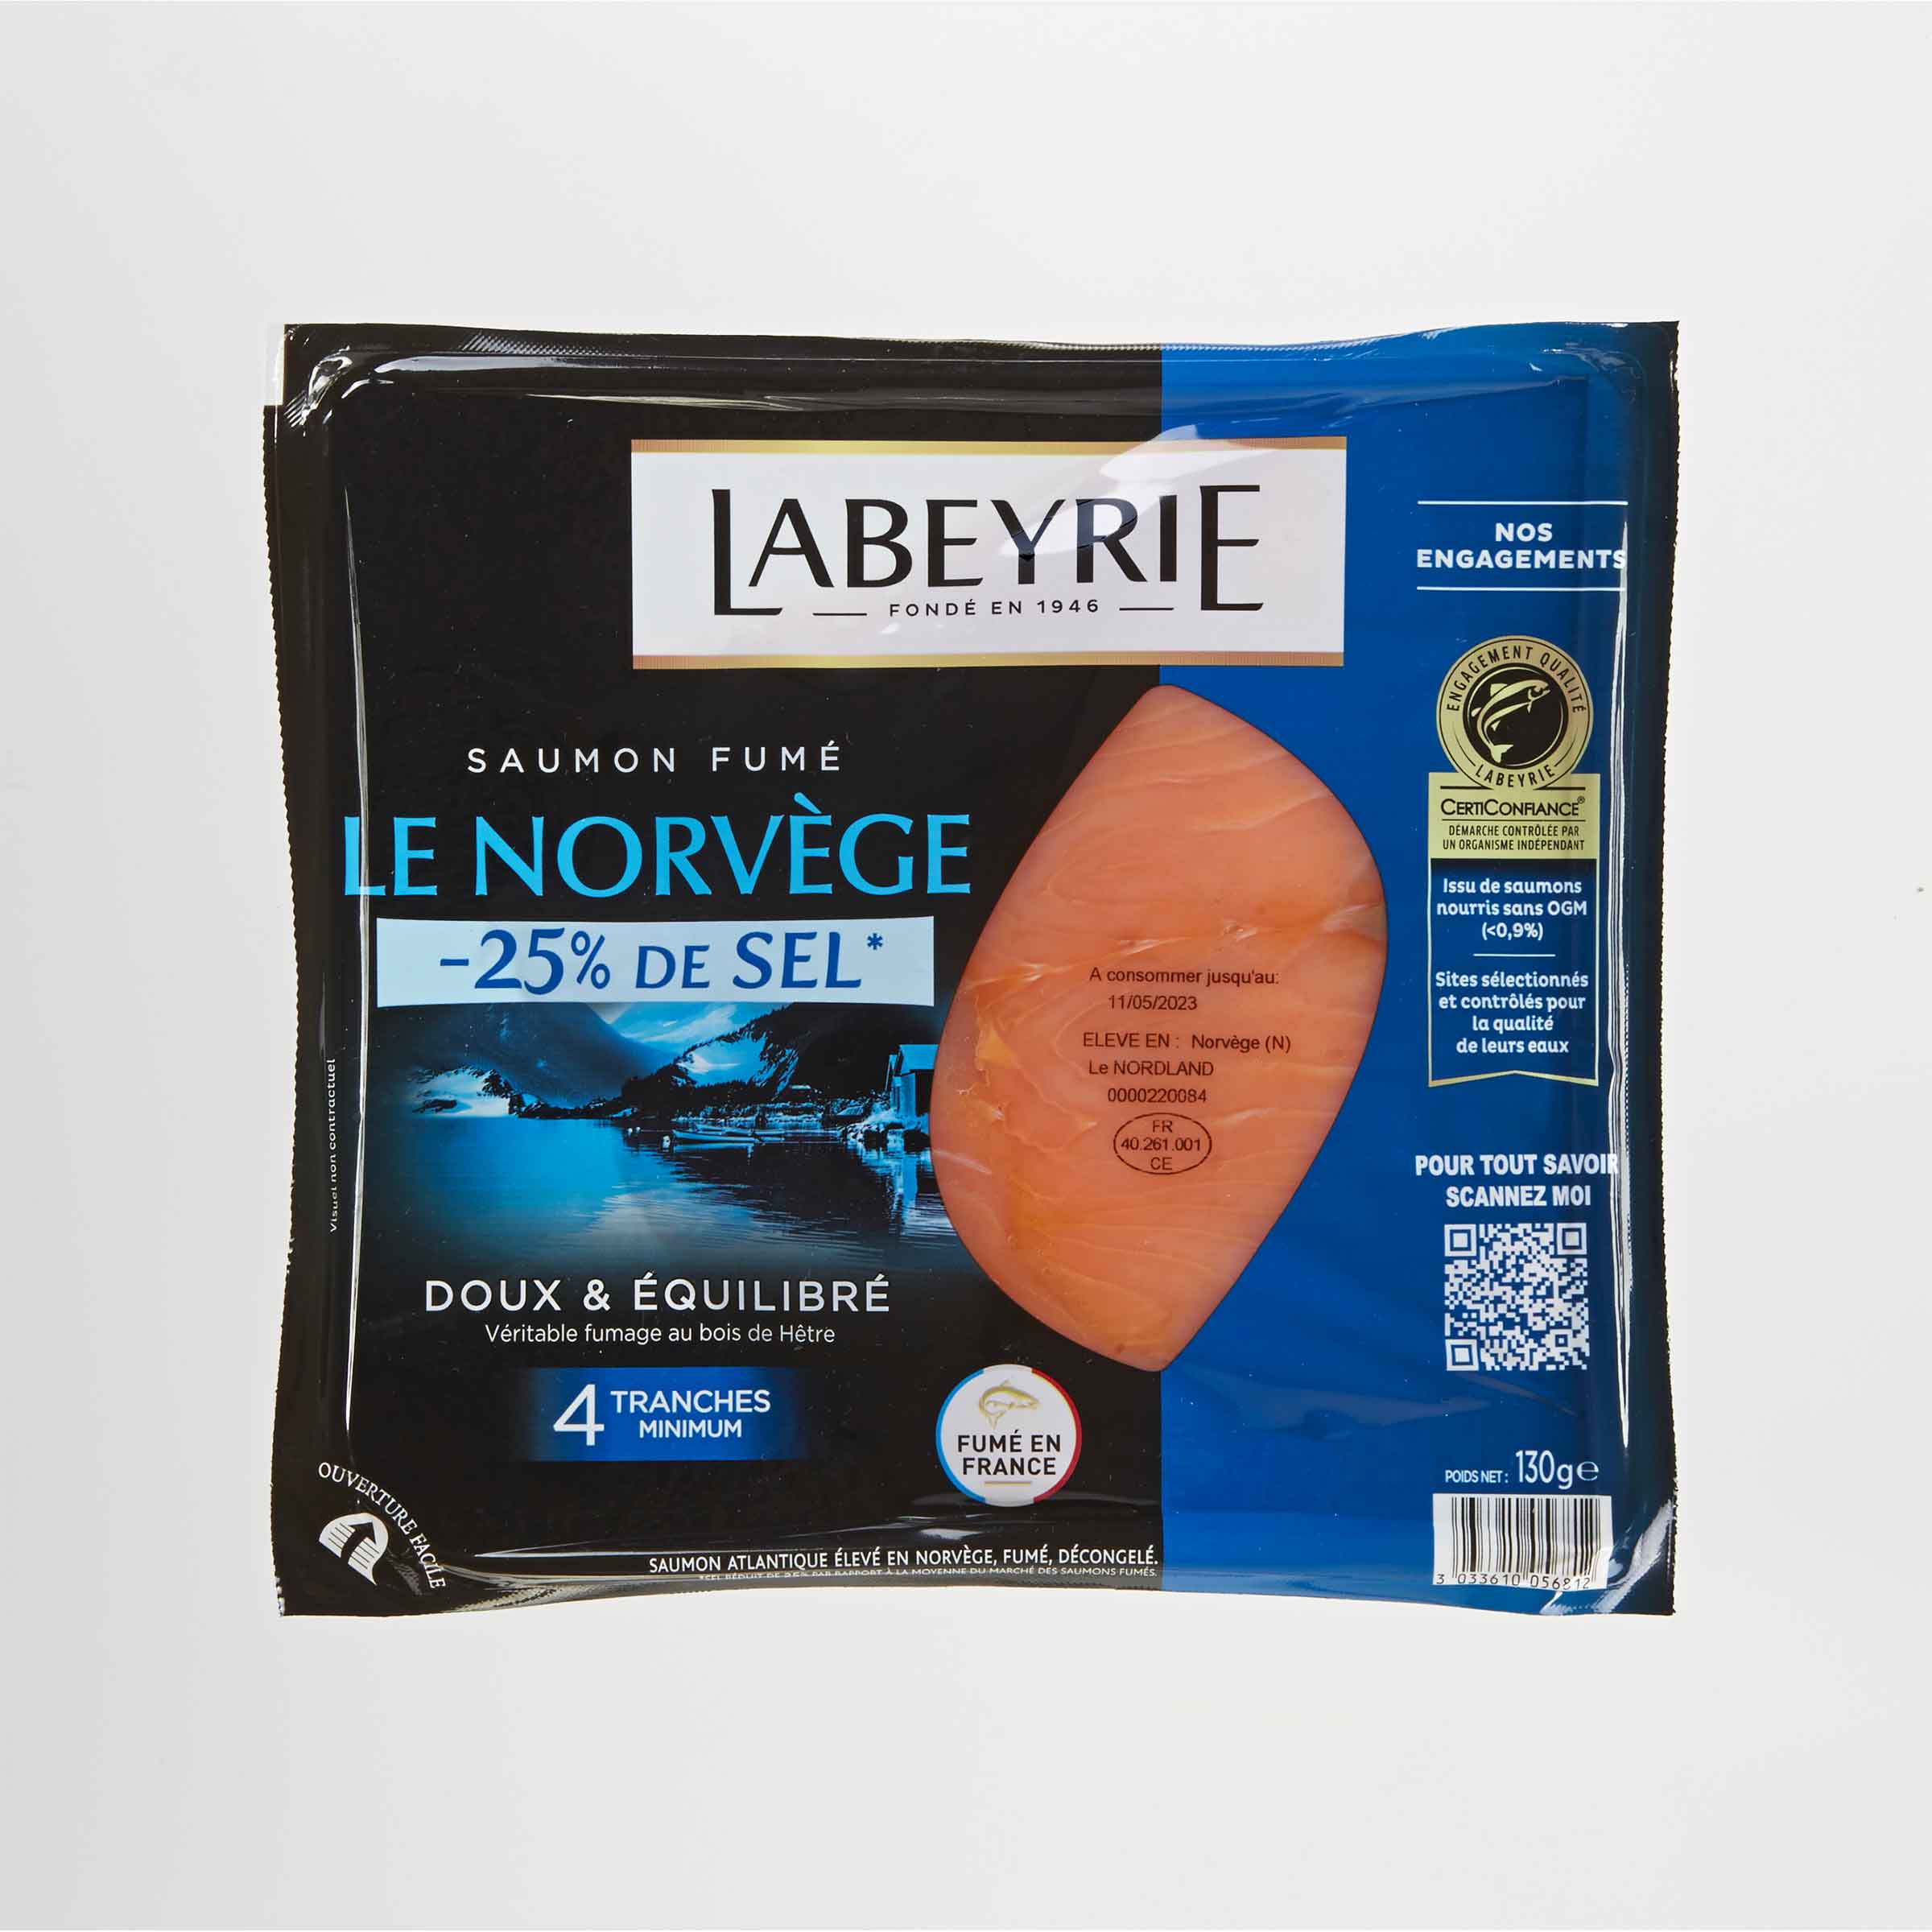 Labeyrie Saumon fumé -25% de sel-